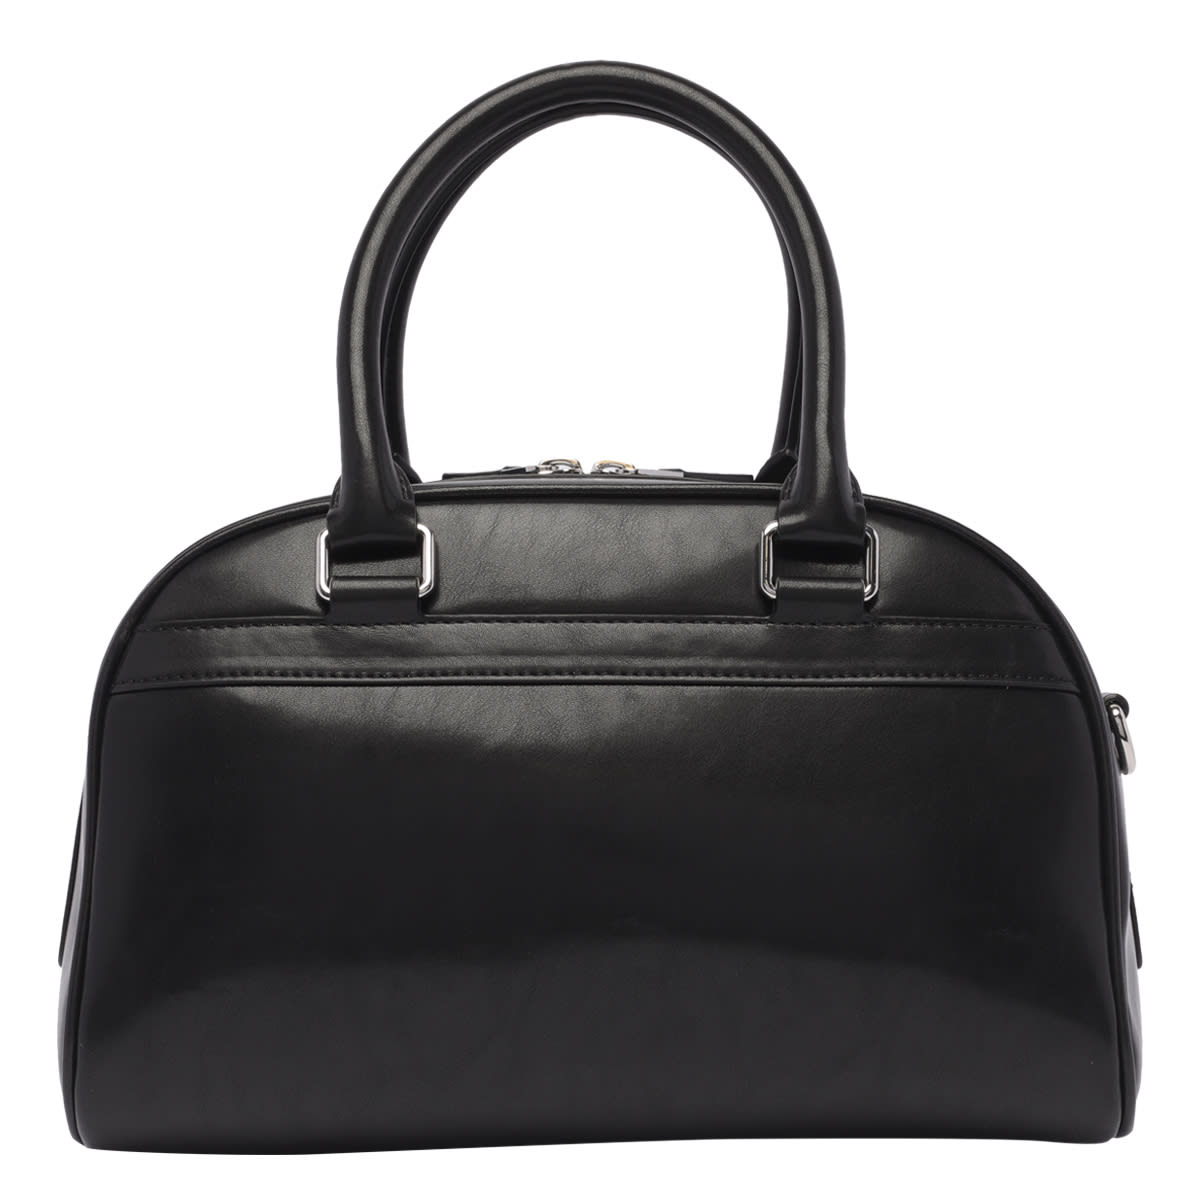 Shop Kenzo Mini Sport Bag In Black